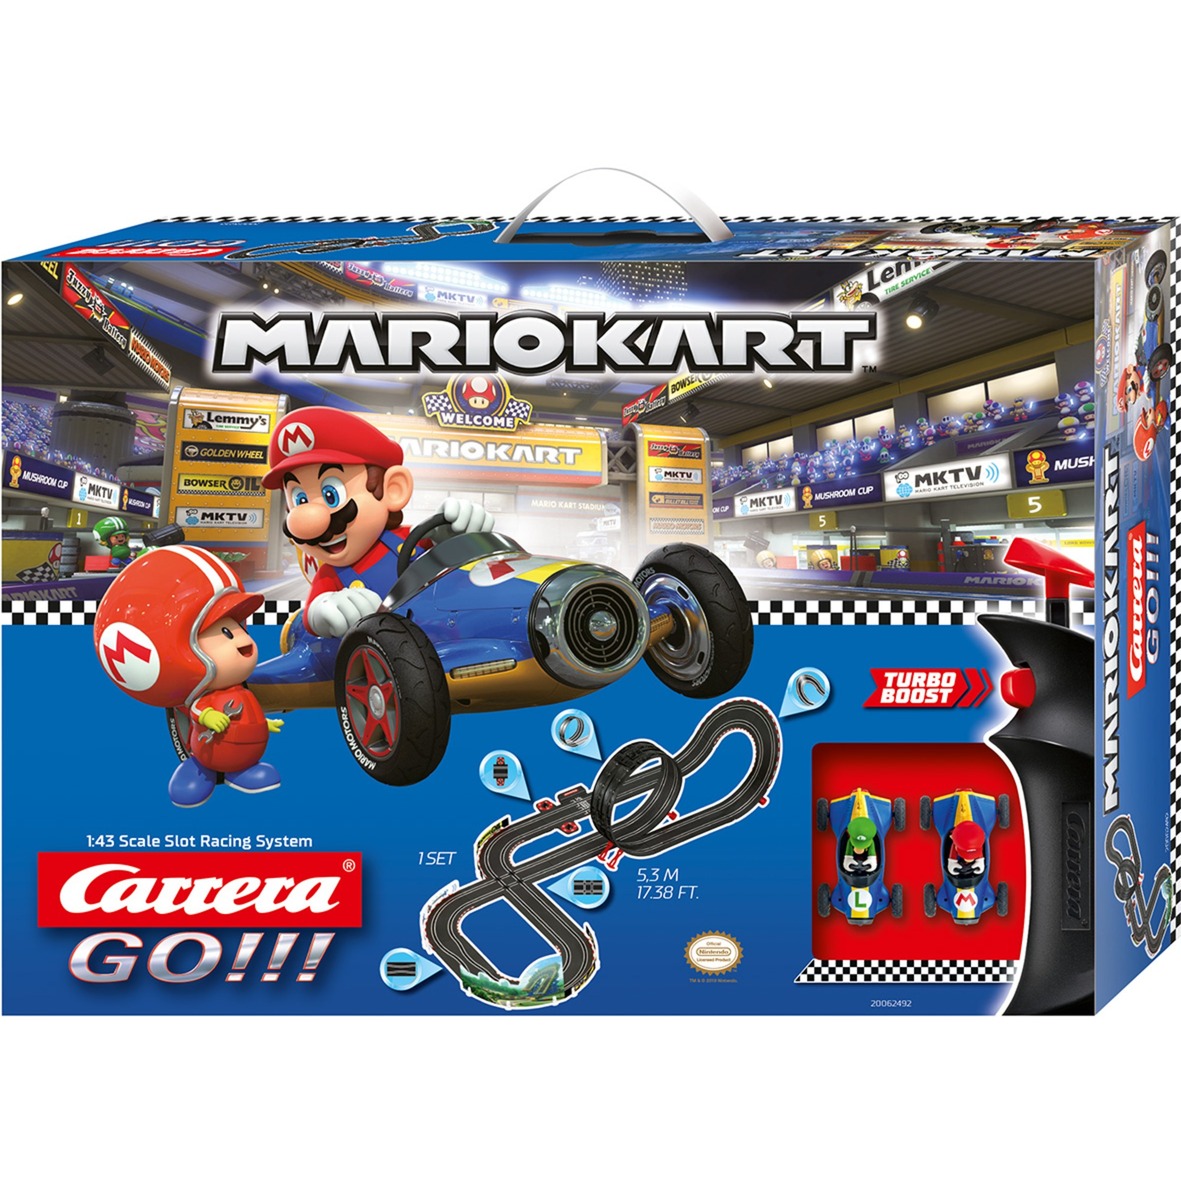 Spielzeug: Carrera GO!!! Nintendo Mario Kart Mach 8, Rennbahn